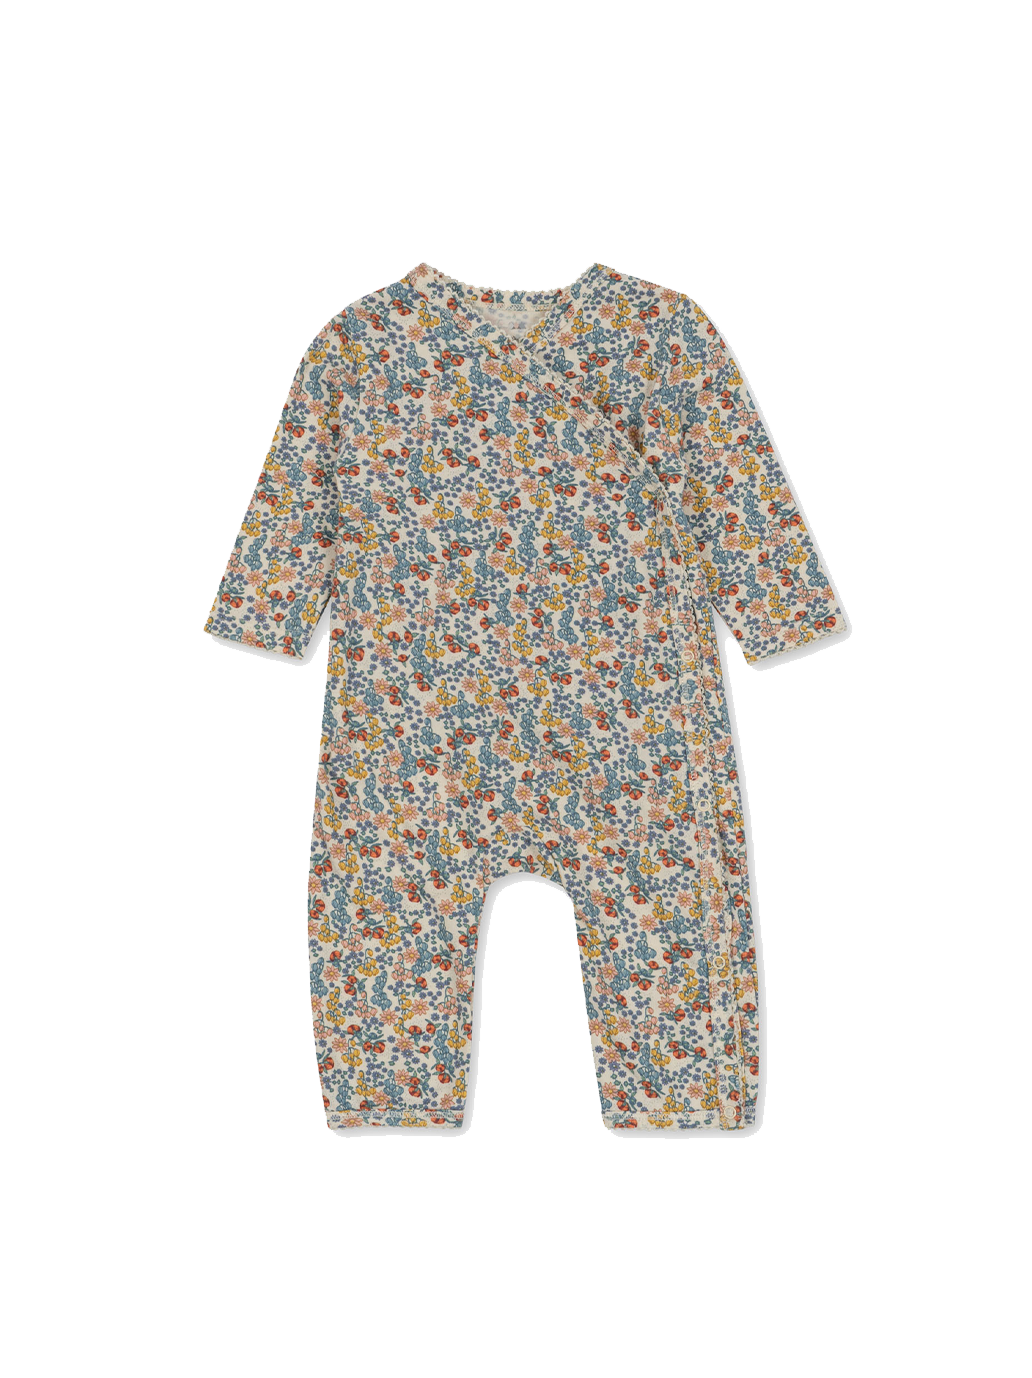 Wickelpyjama aus Bio-Baumwolle für Neugeborene